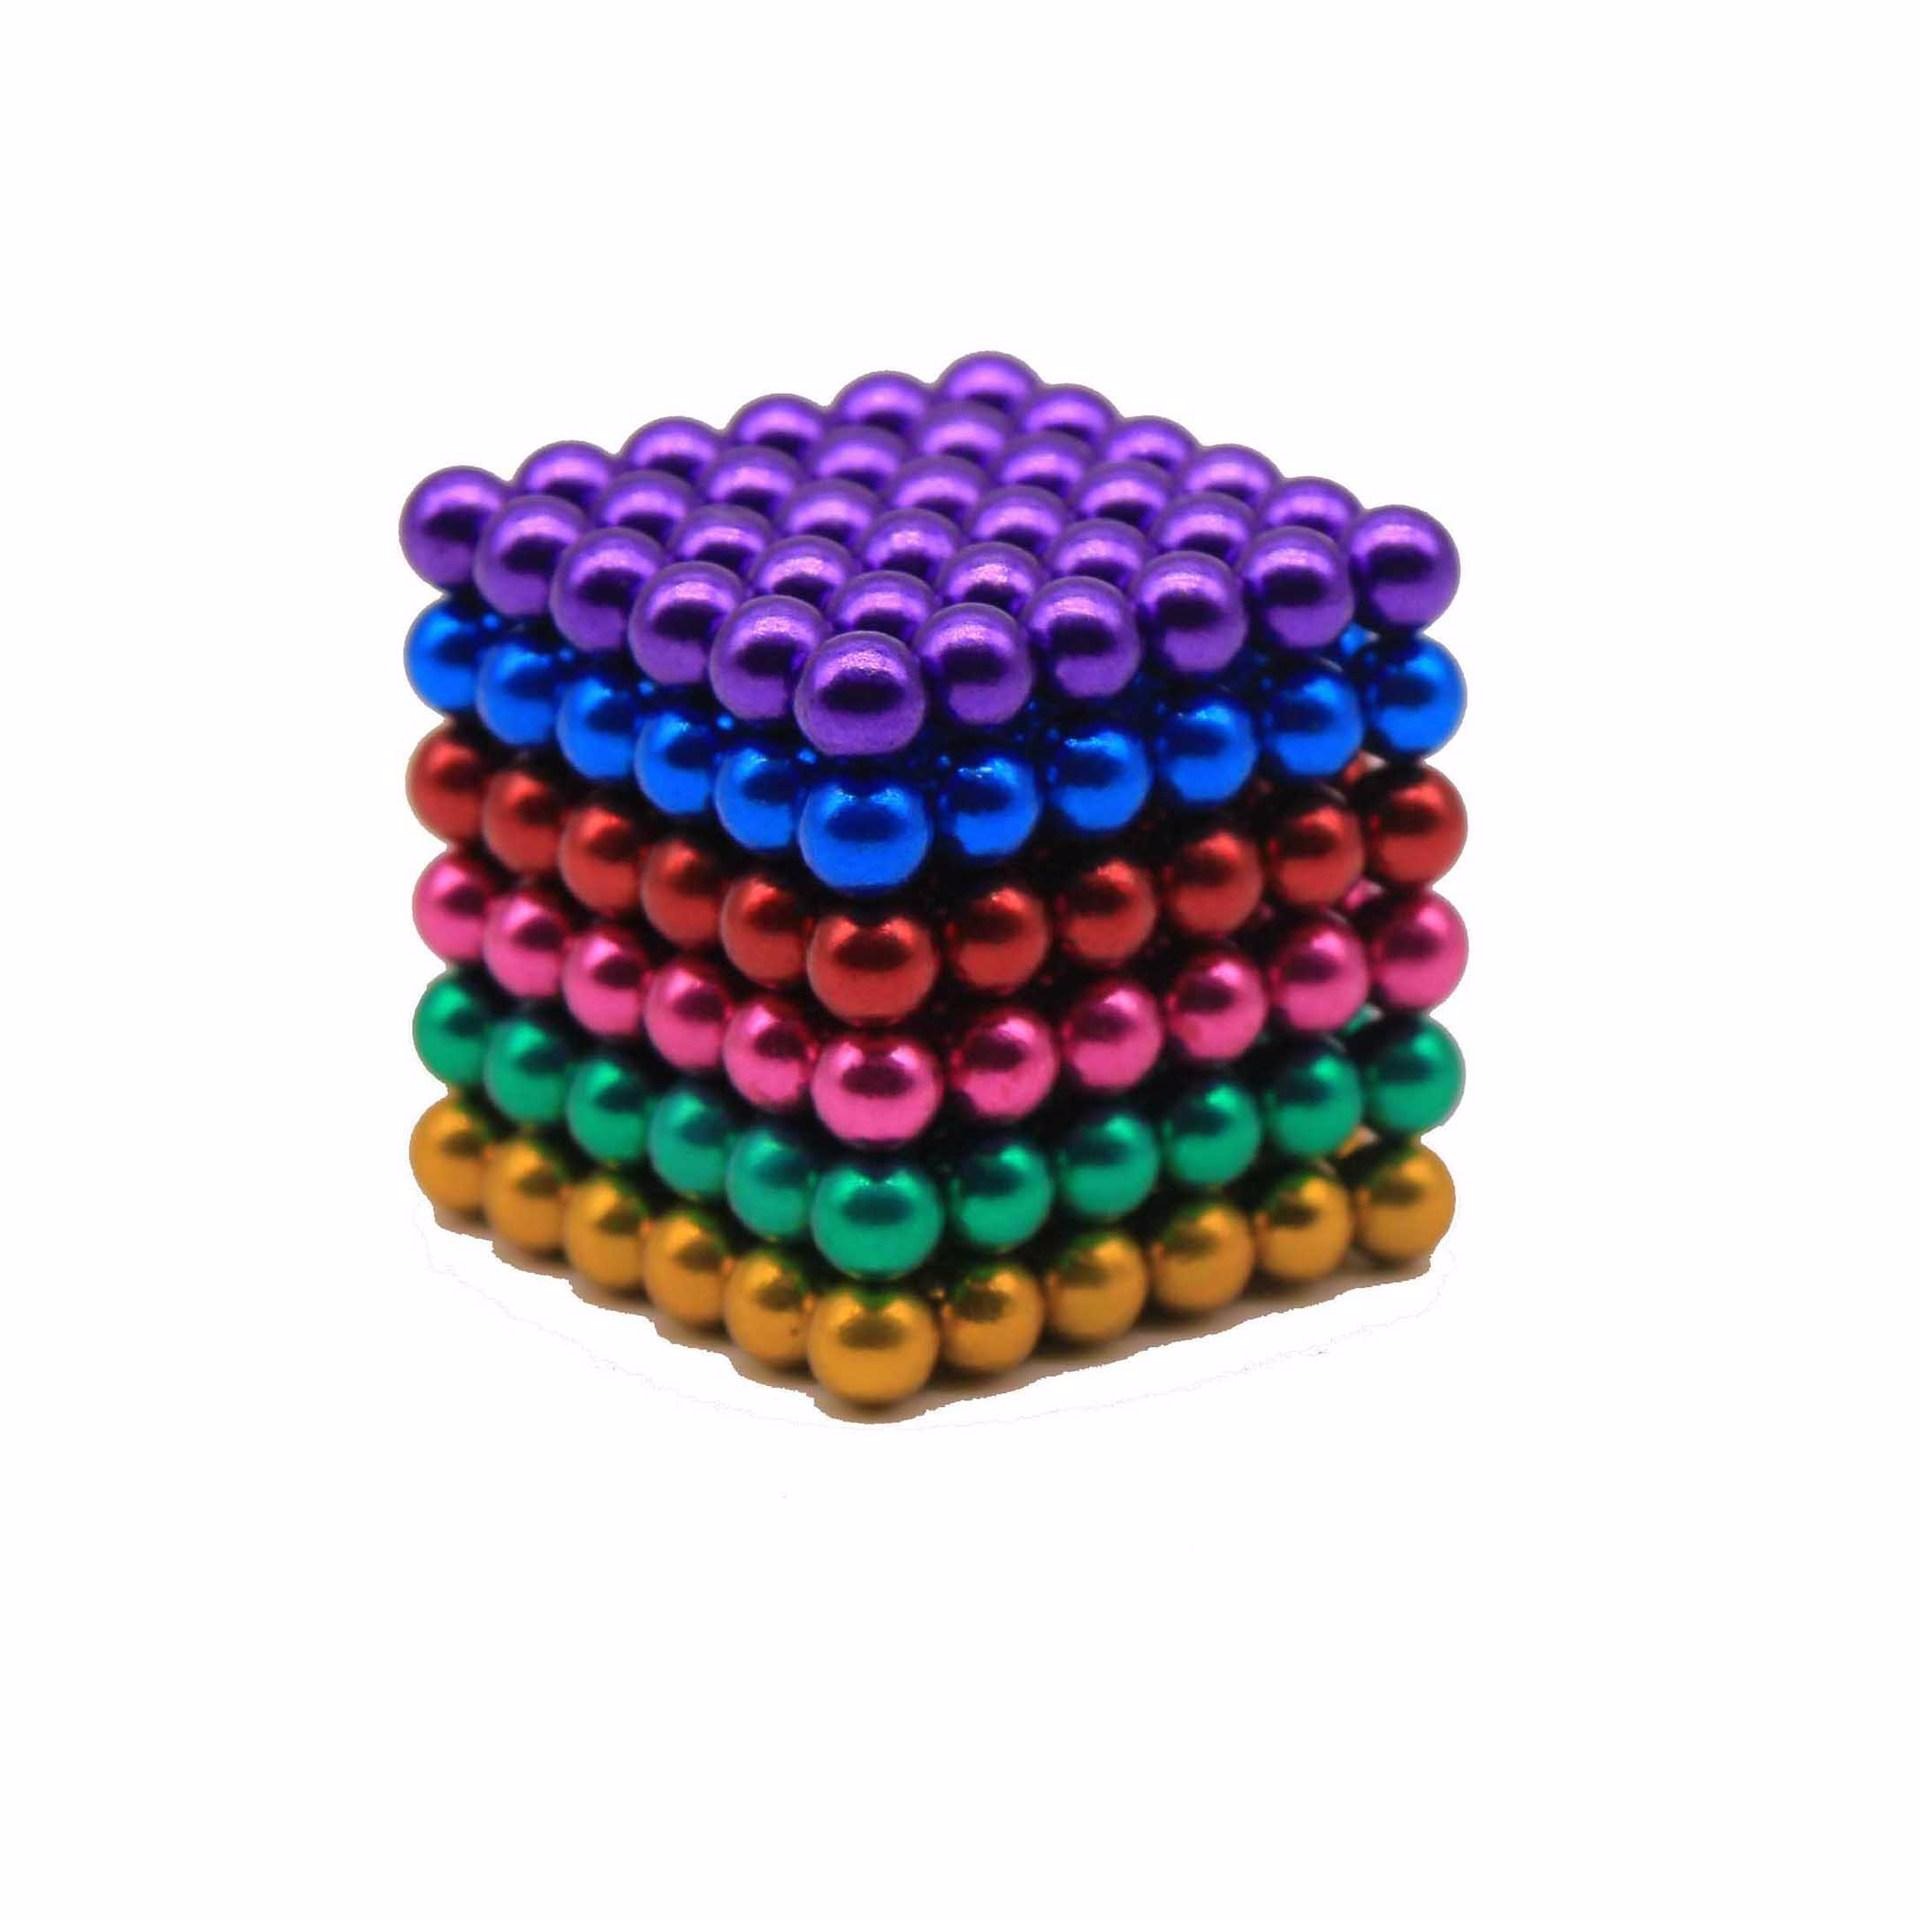 减压益智玩具彩色磁球魔方 巴克球批发 5MM巴克球216颗磁力球